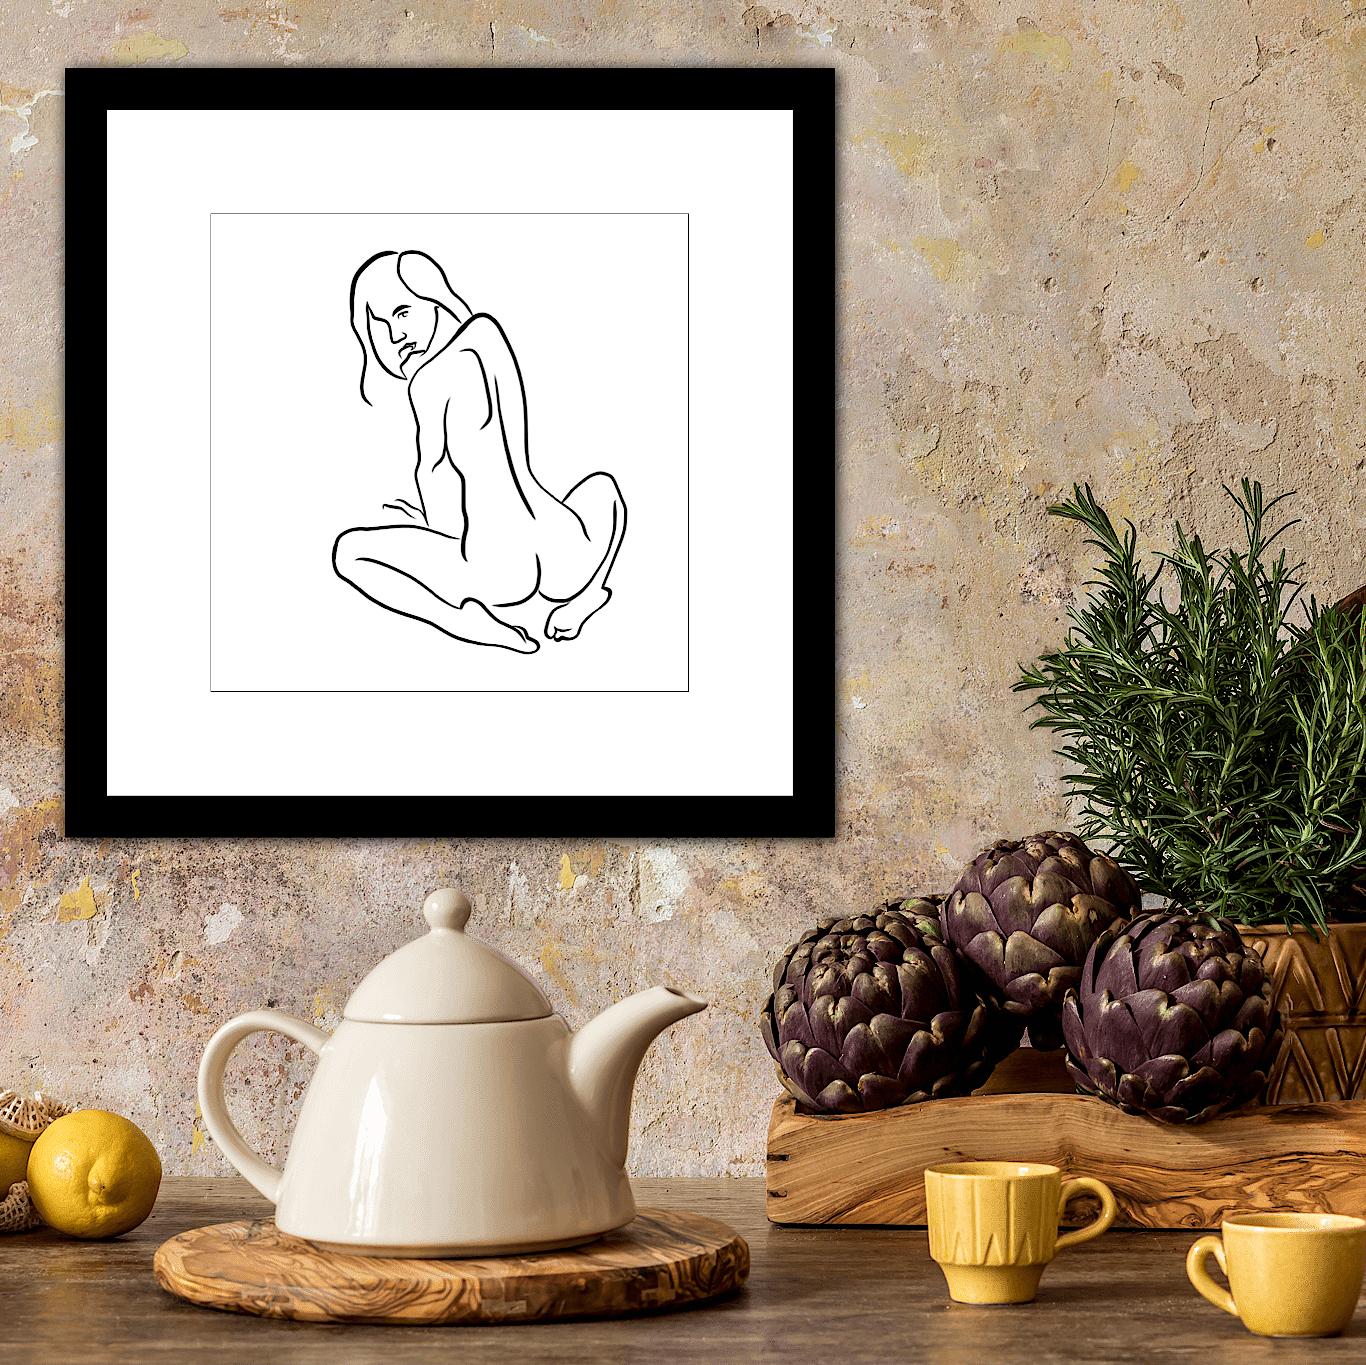 Haiku n°35, 1/50, dessin numérique représentant une femme nue assise et regardant - Contemporain Print par Michael Binkley